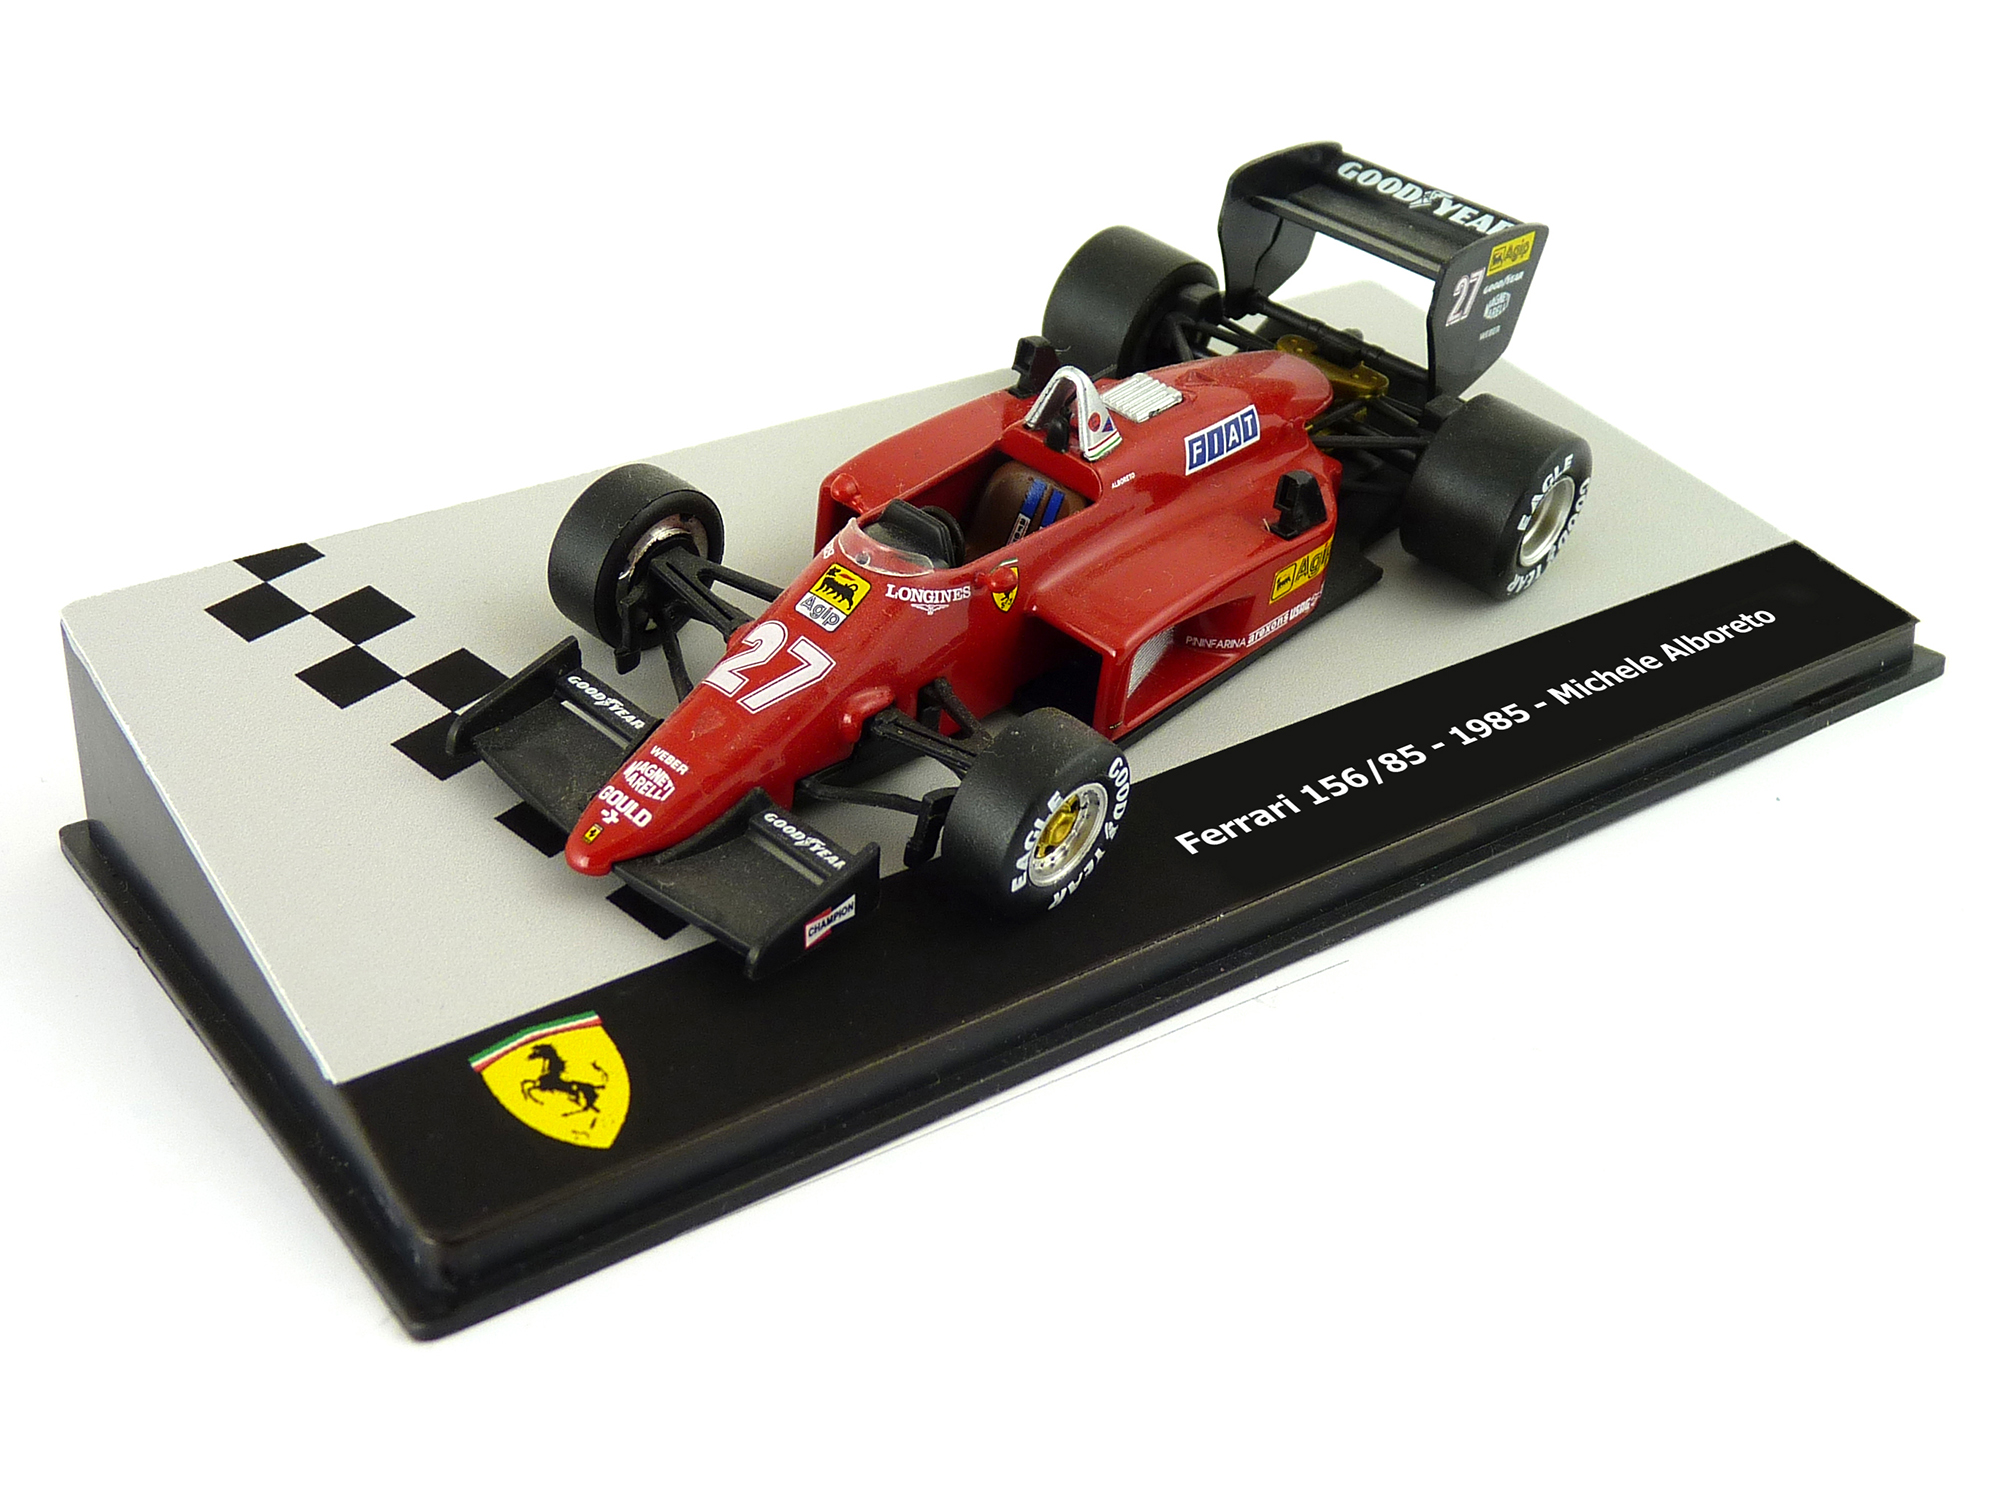 16 - Ferrari 156/85